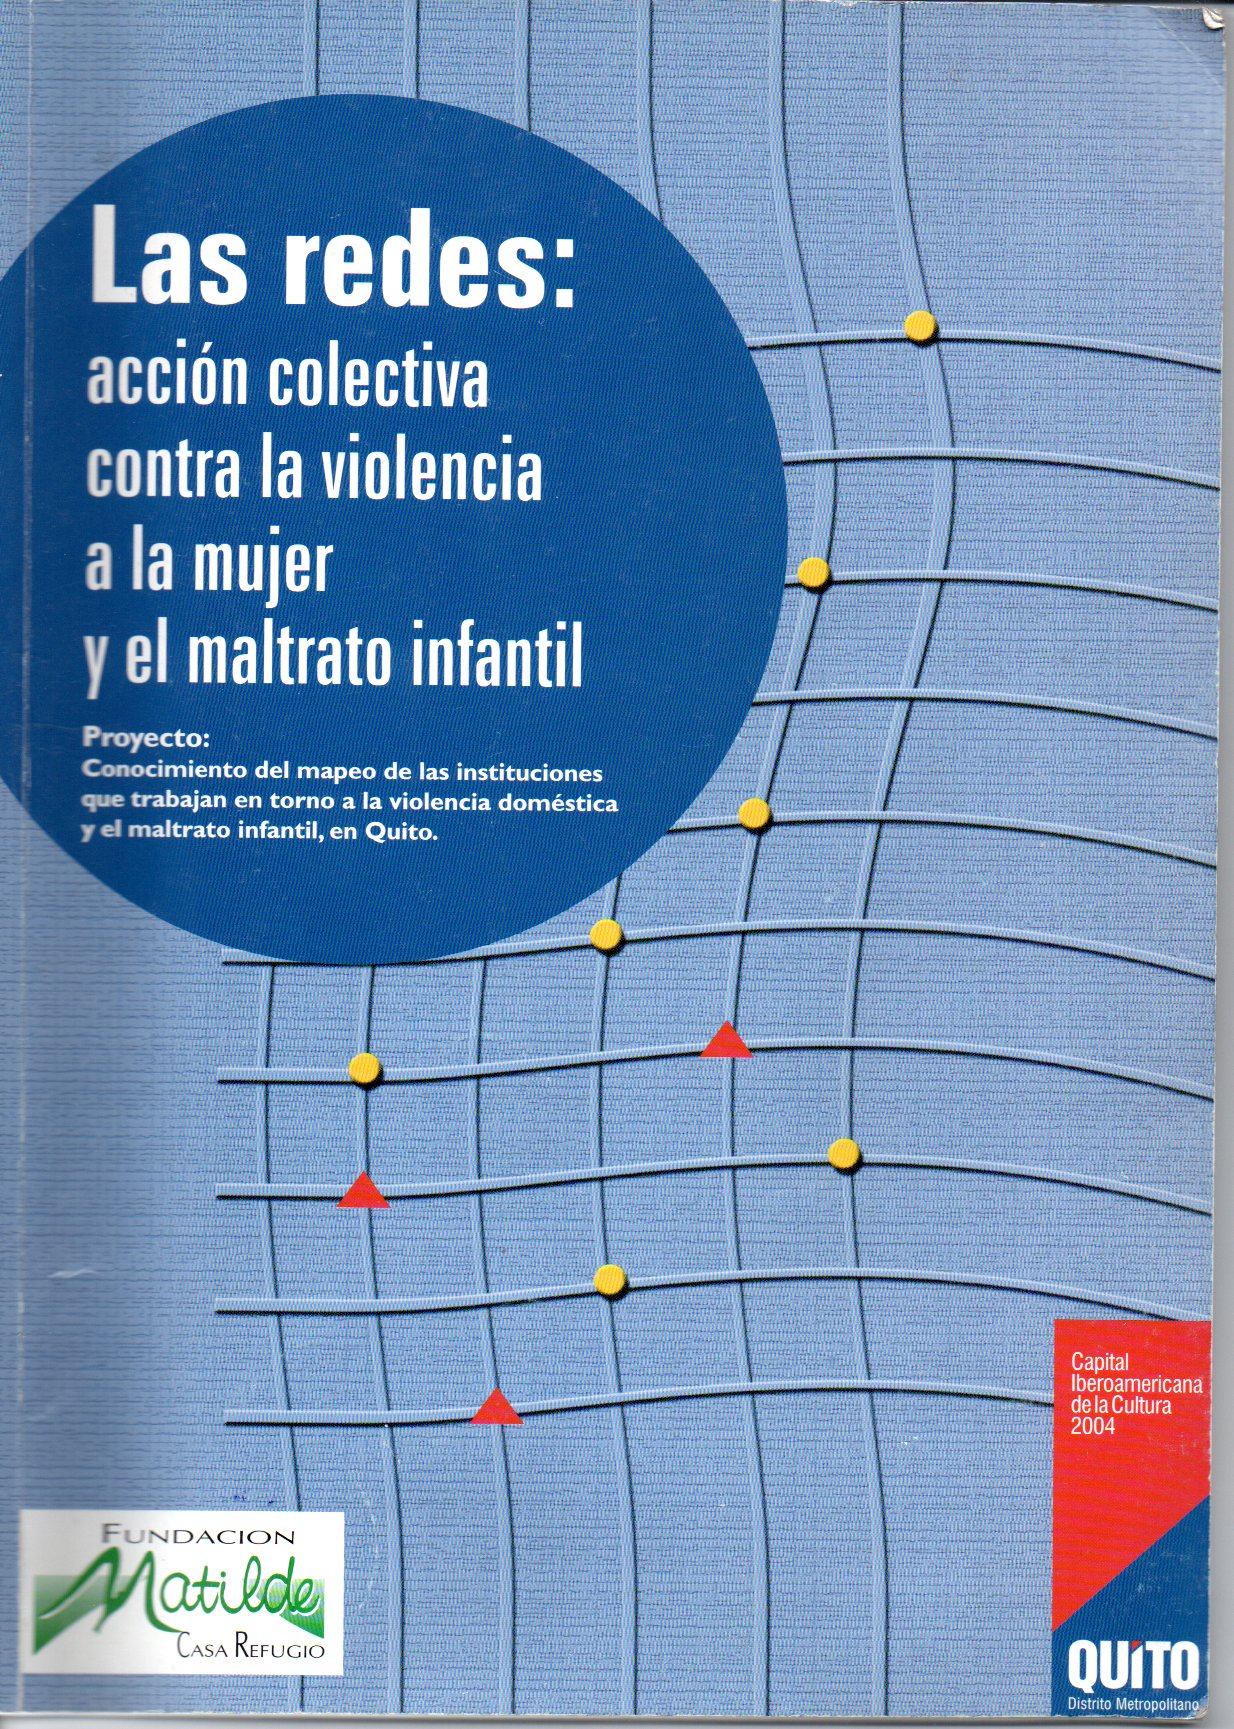 Las redes: acción colectiva contra la violencia a la mujer y el maltrato infantil